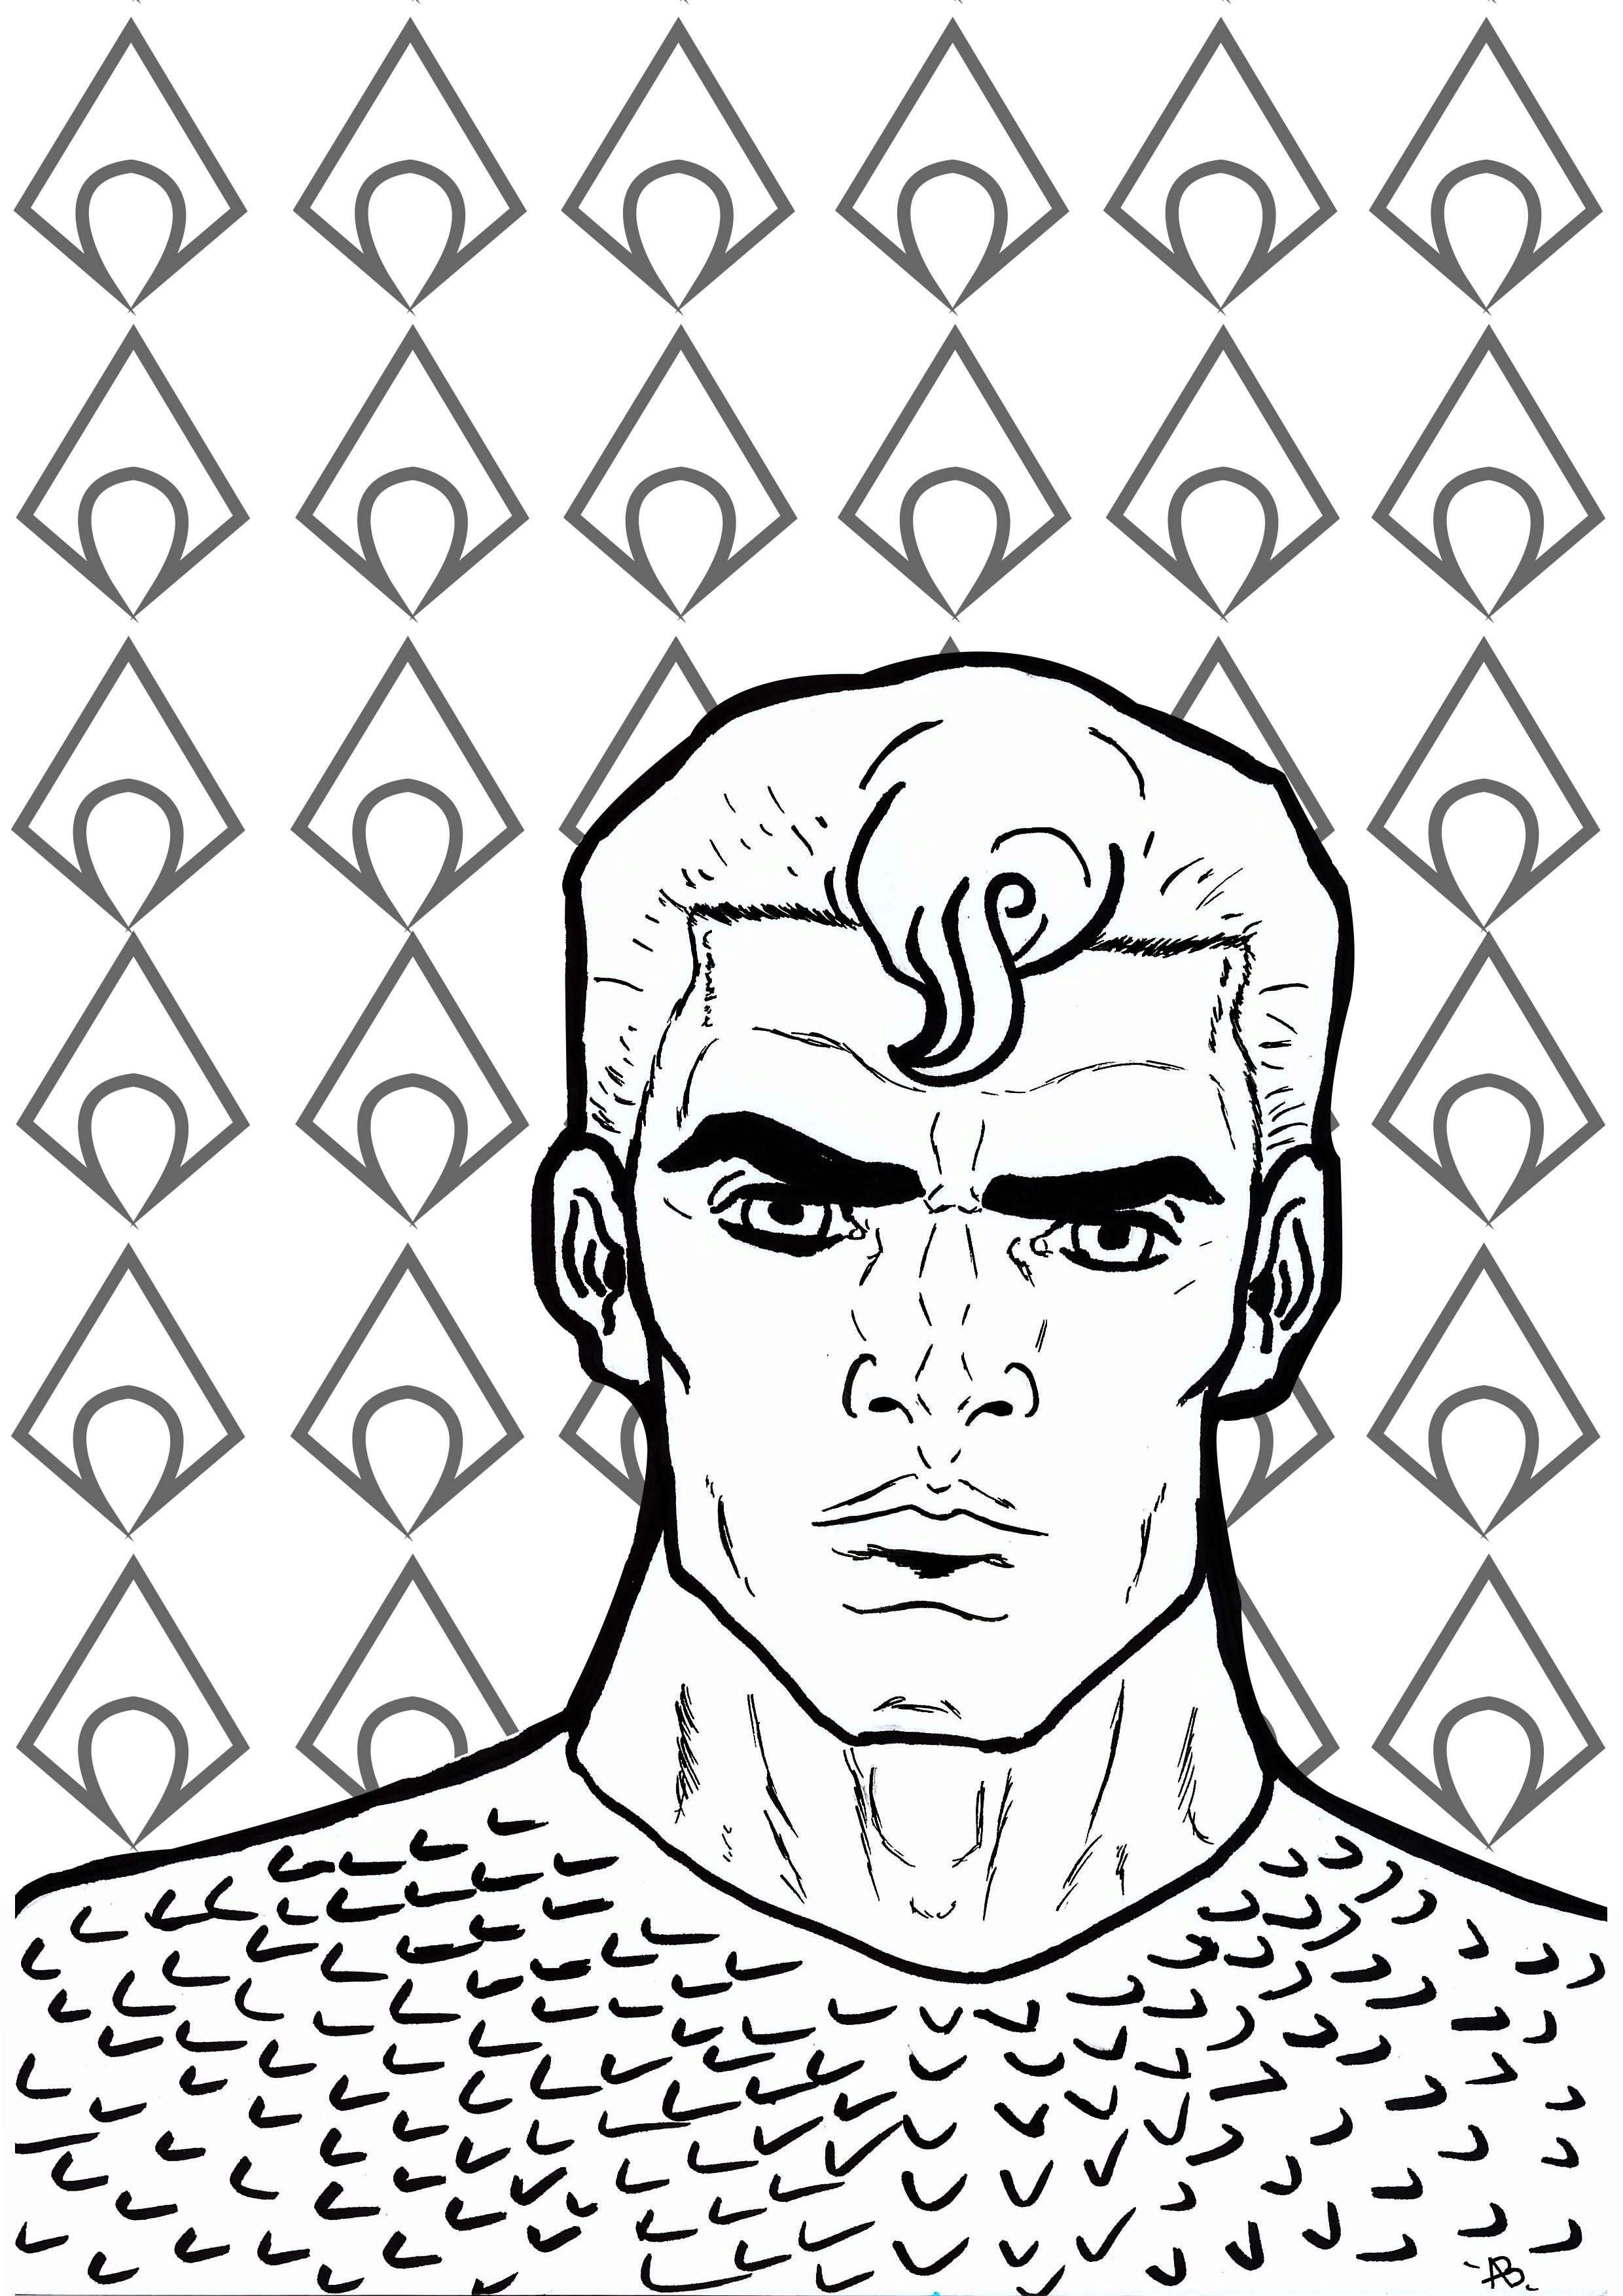 Página para colorir inspirada no Aquaman (personagem da DC Comics)